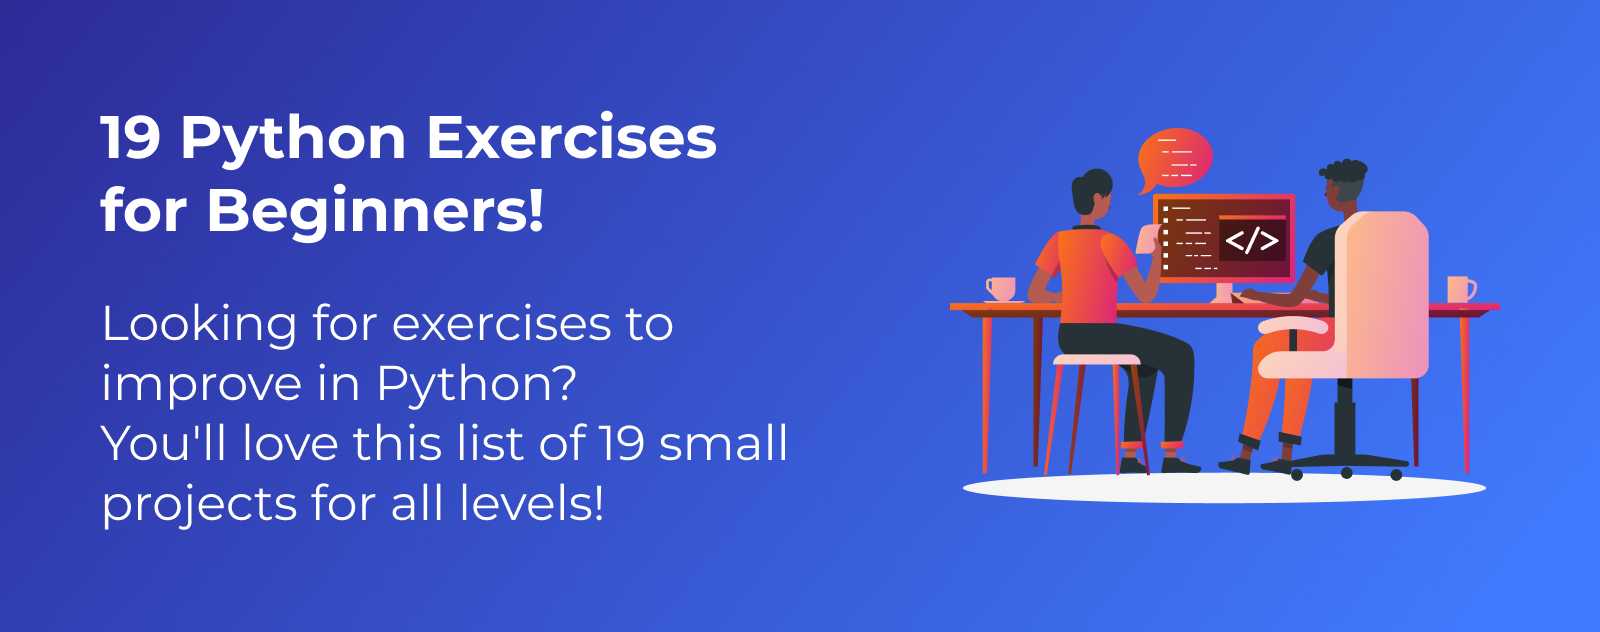 19 Python Exercises!